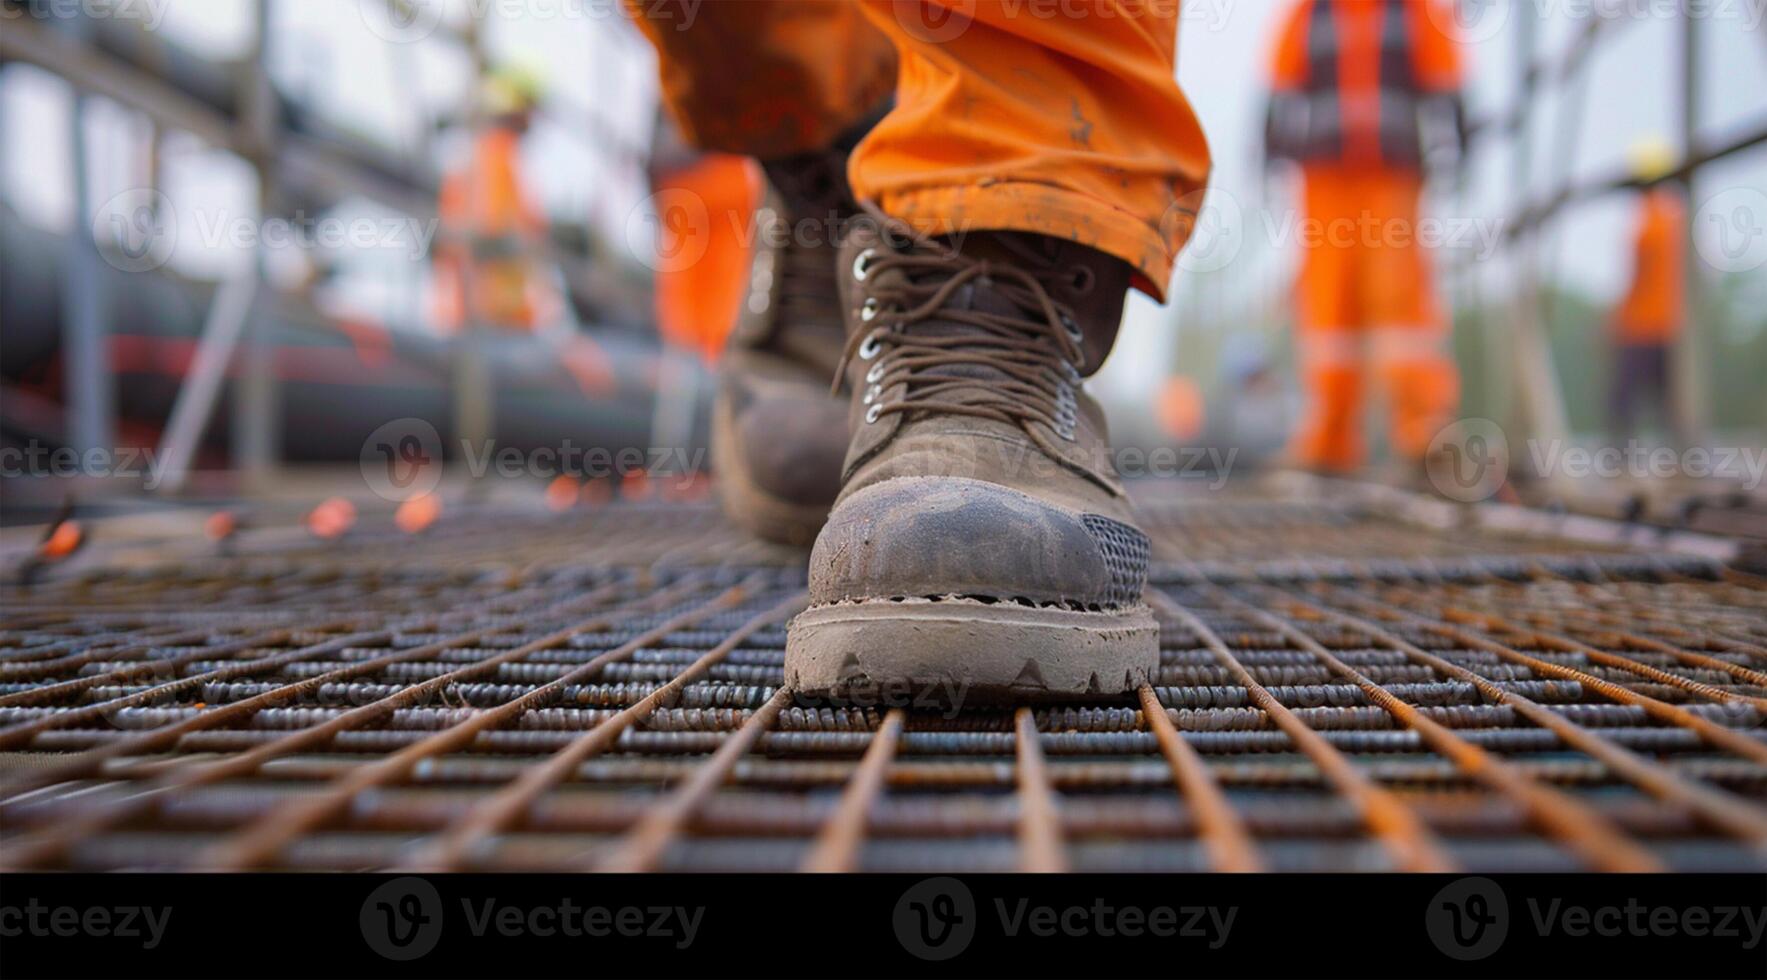 stänga upp av en arbetarens skor gående på en stål galler golv i en konstruktion webbplats, med människor arbetssätt i de bakgrund, förmedla ett industriell arkitektur begrepp, i en närbild se foto